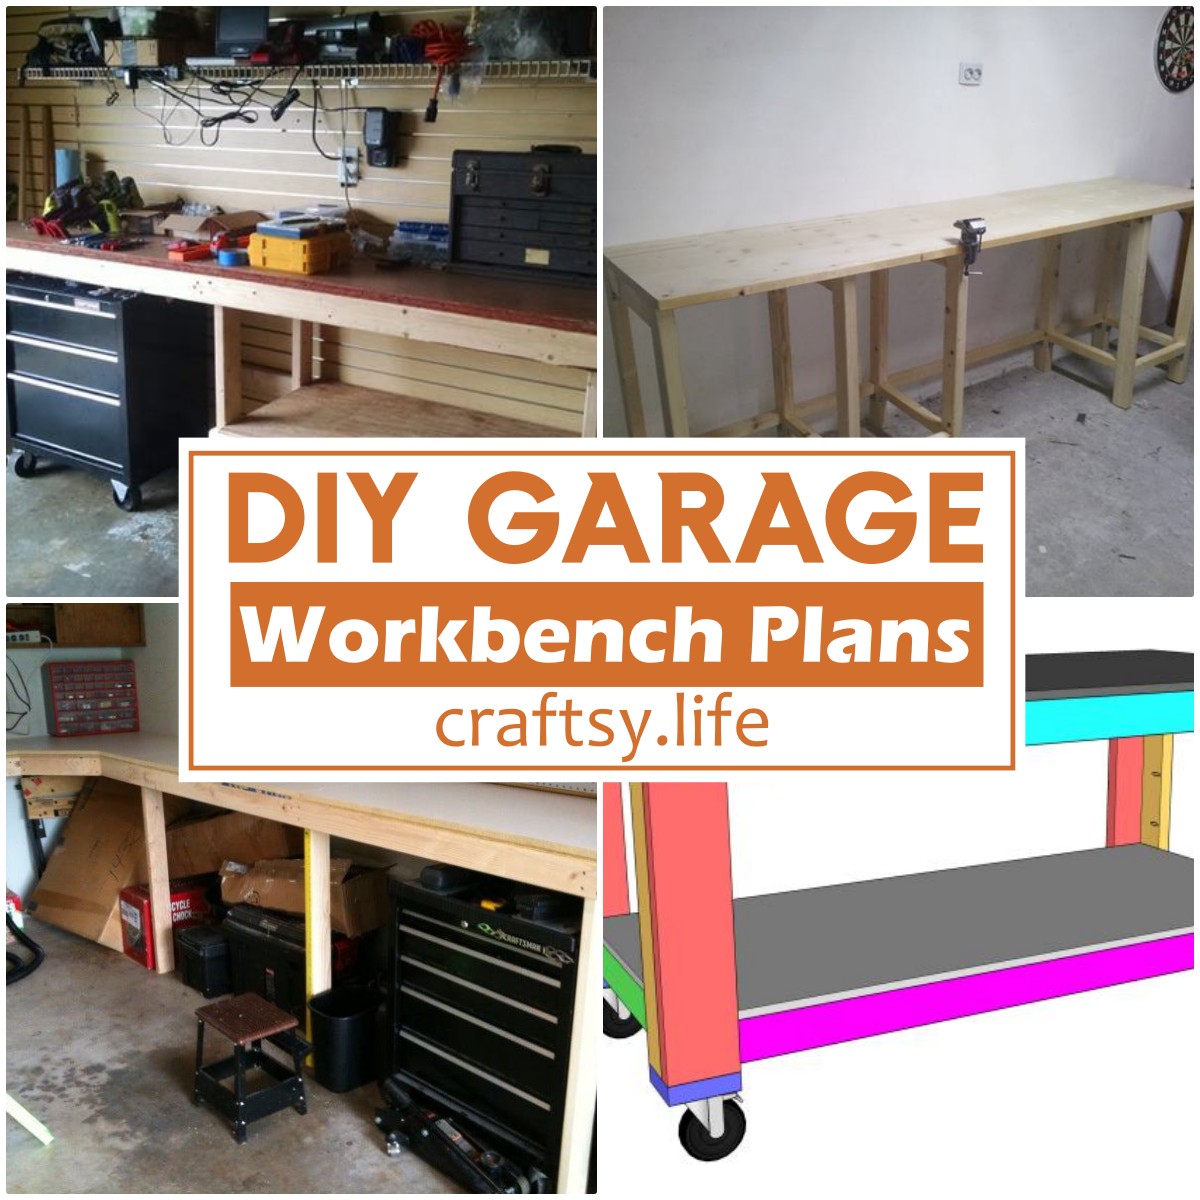 DIY Garage Workbench Plans